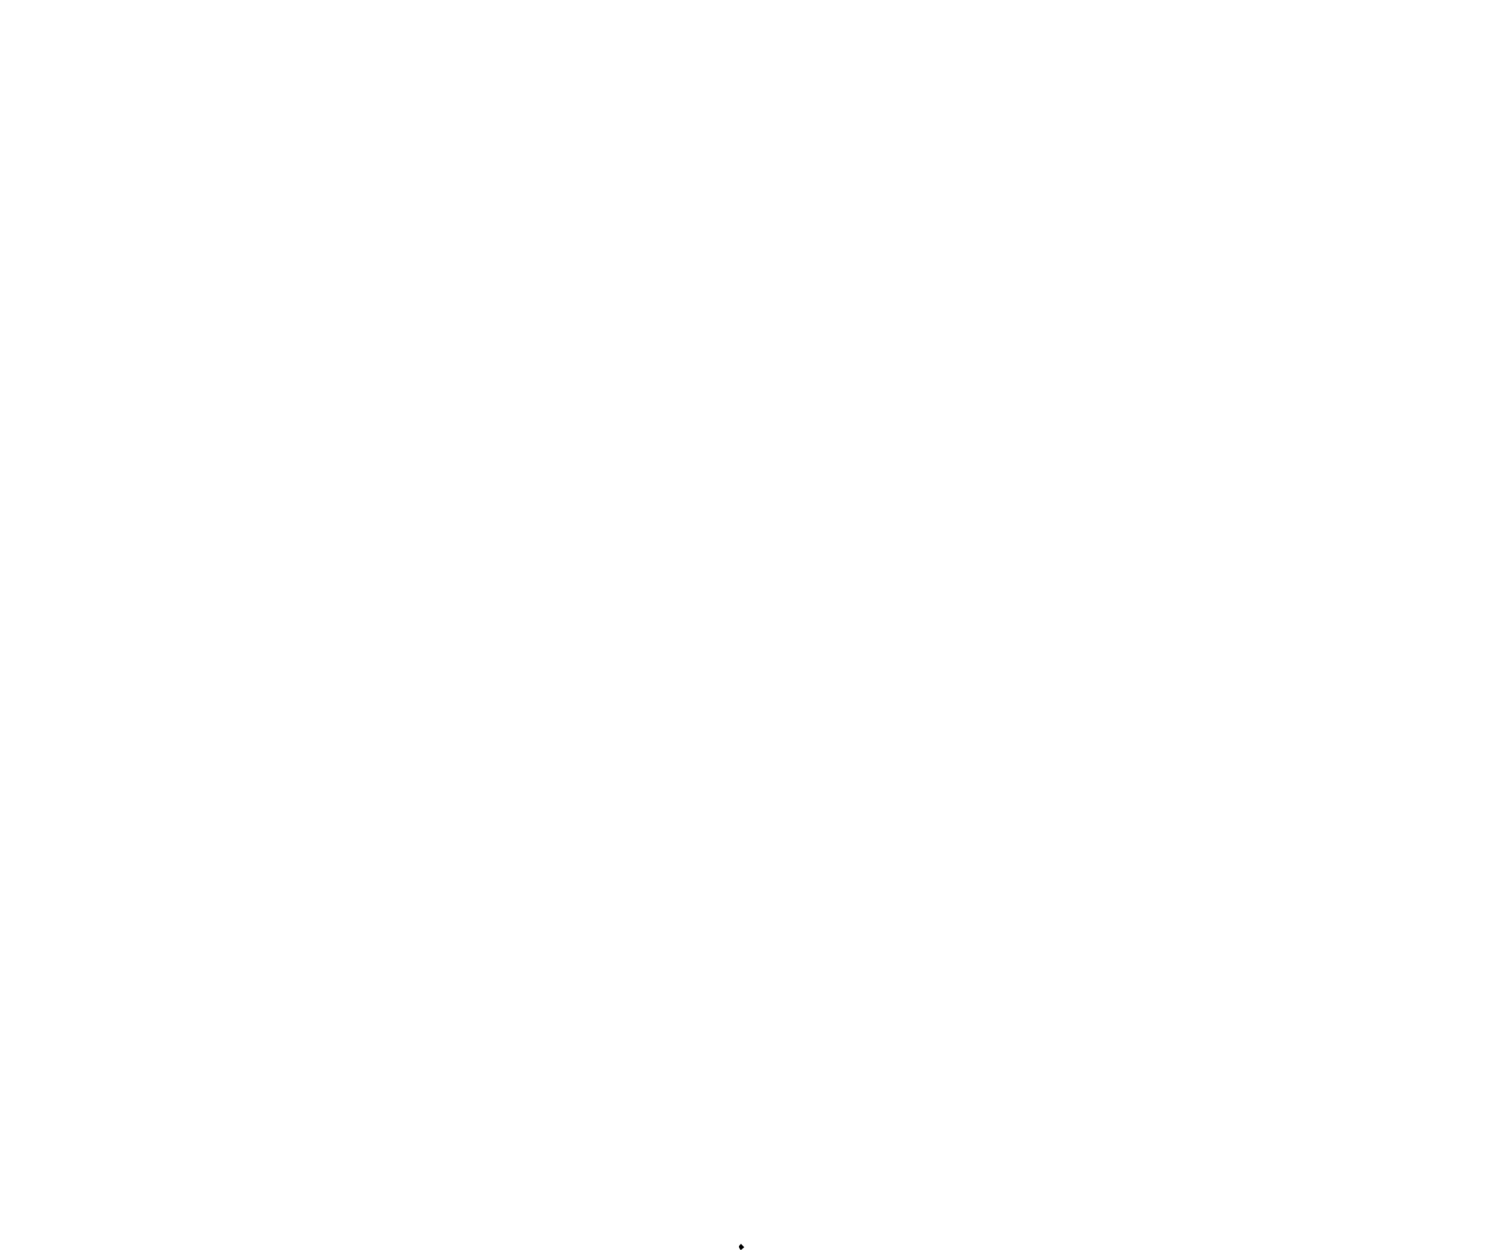 A lotus in mud